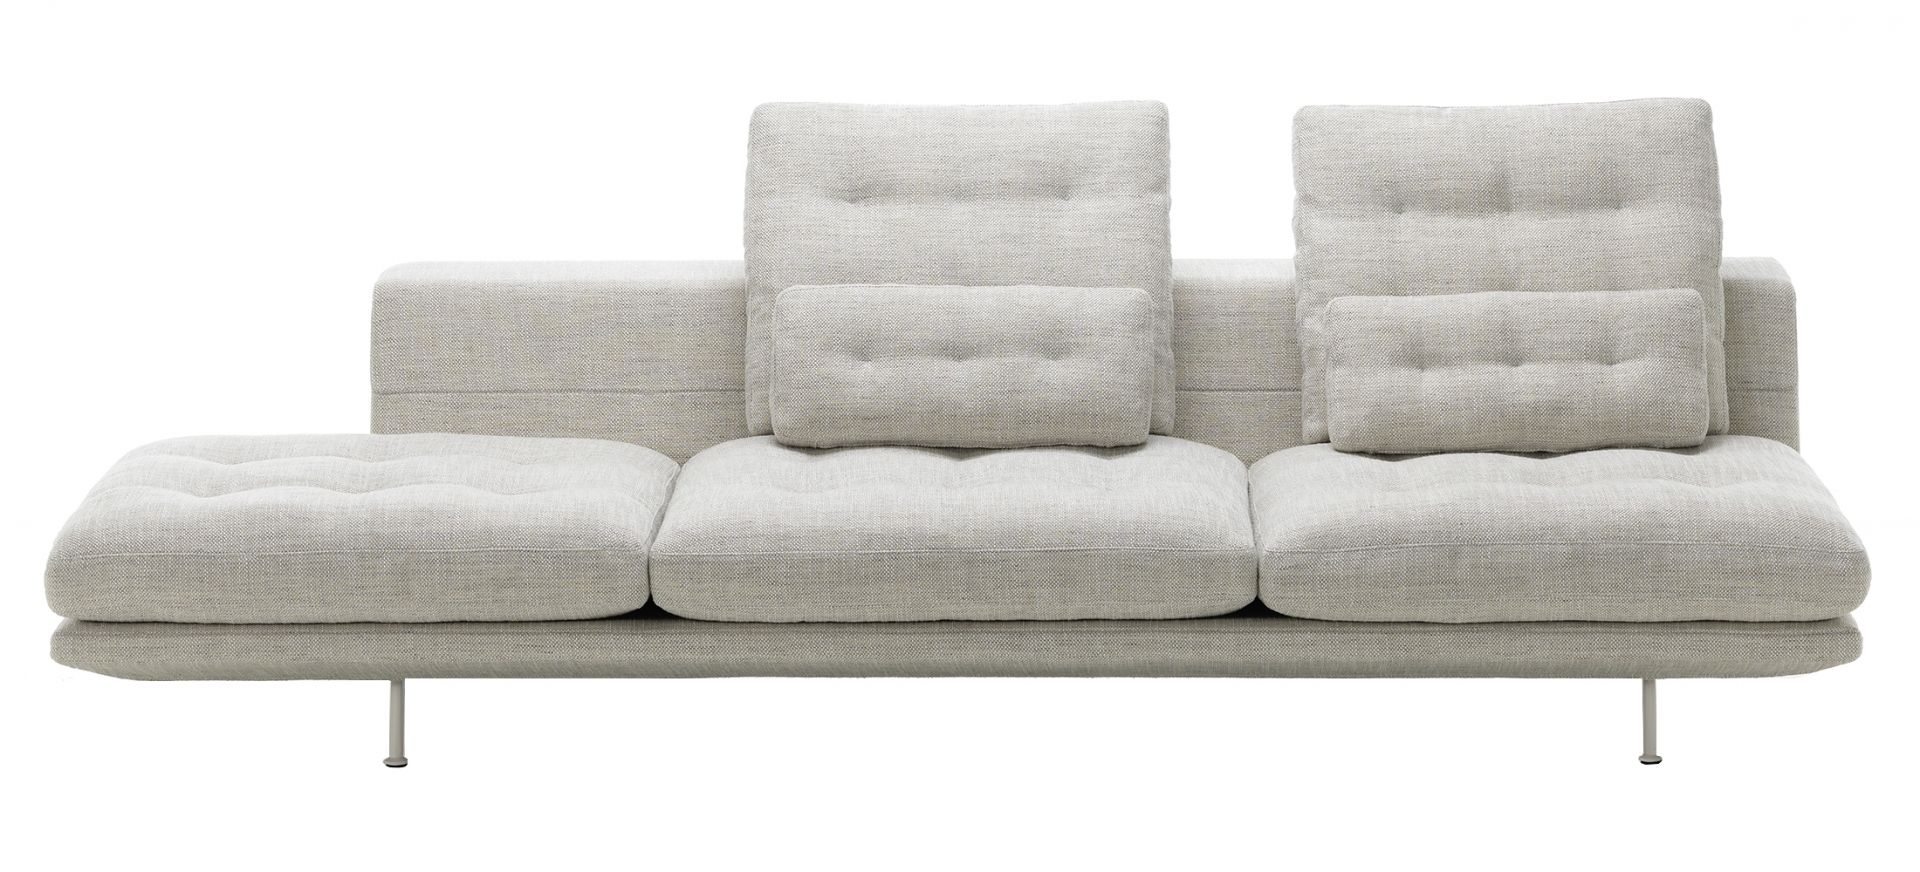 Vitra designové sedačky Grand Sofa 3.5 open (cena bez polštářů) - DESIGNPROPAGANDA